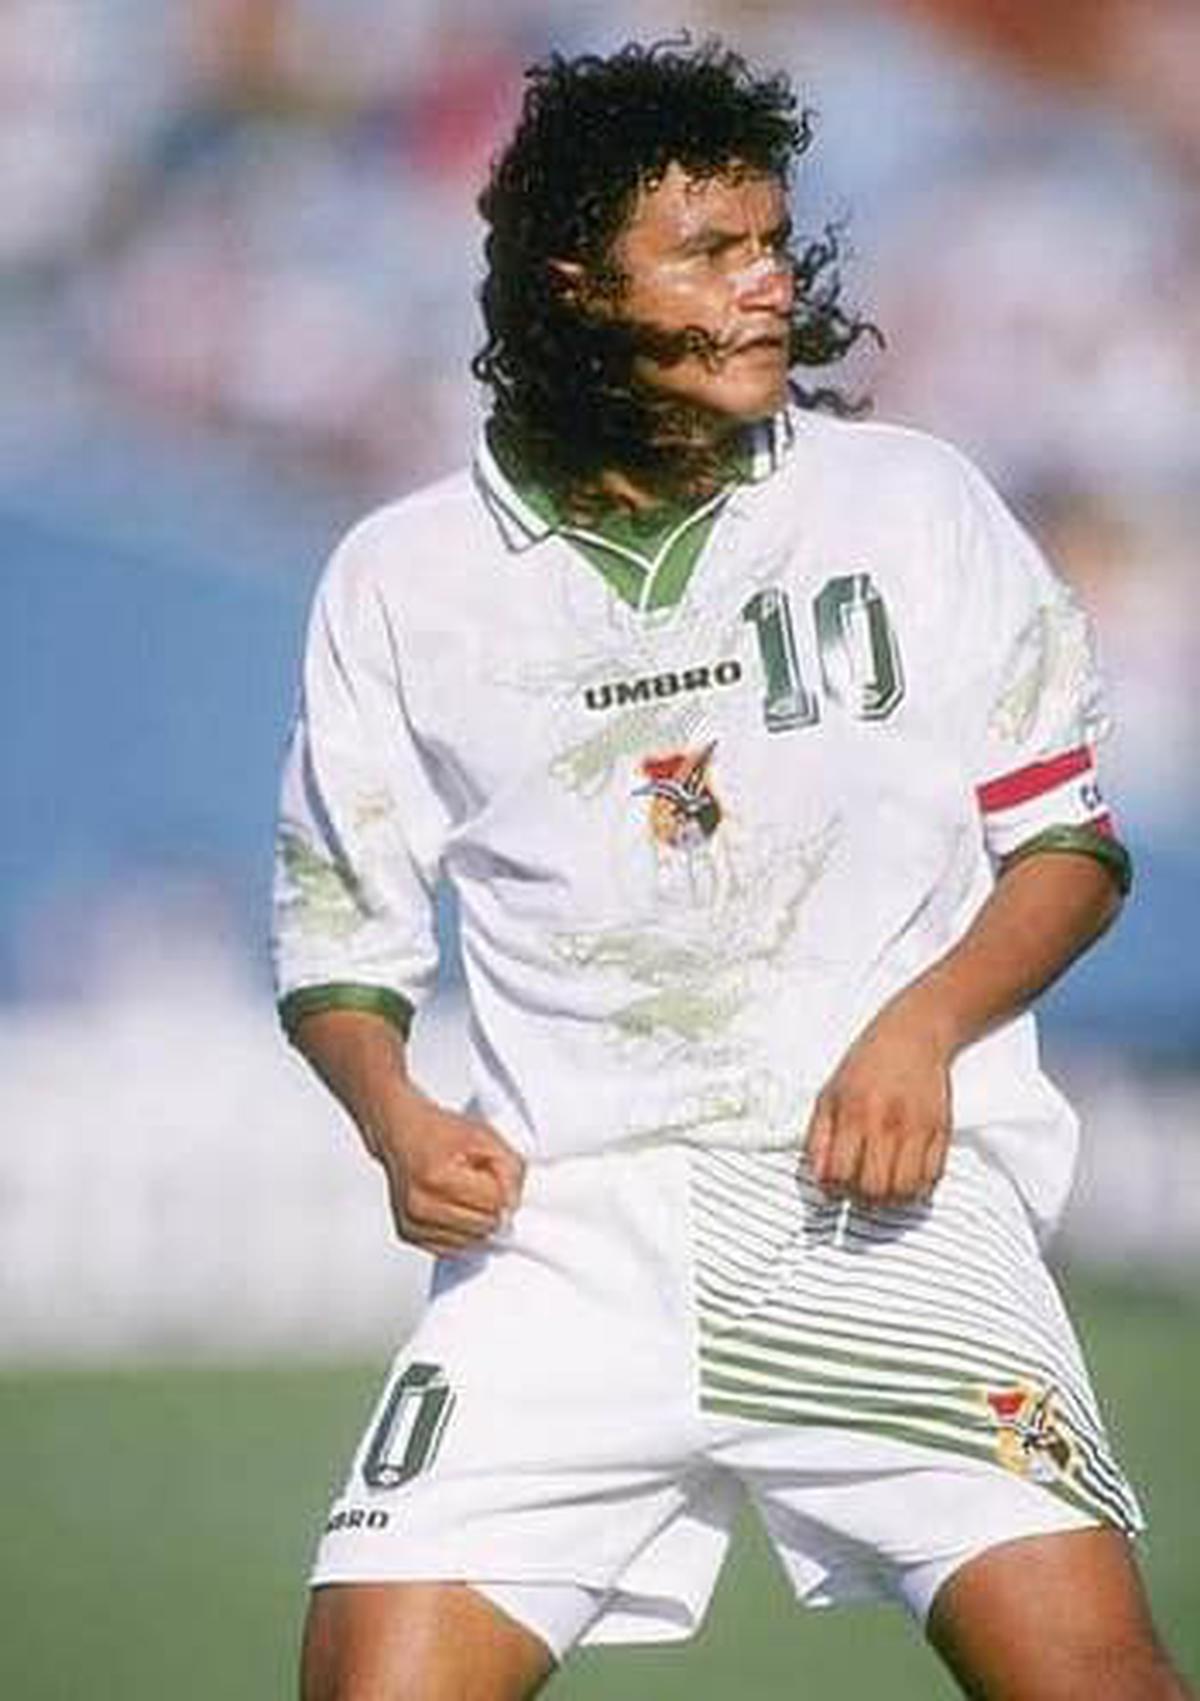 El Diablo | Más que un futbolista, un símbolo de la cultura y la pasión boliviana por el deporte. Fuente: Instagram @marcoetcheverry10